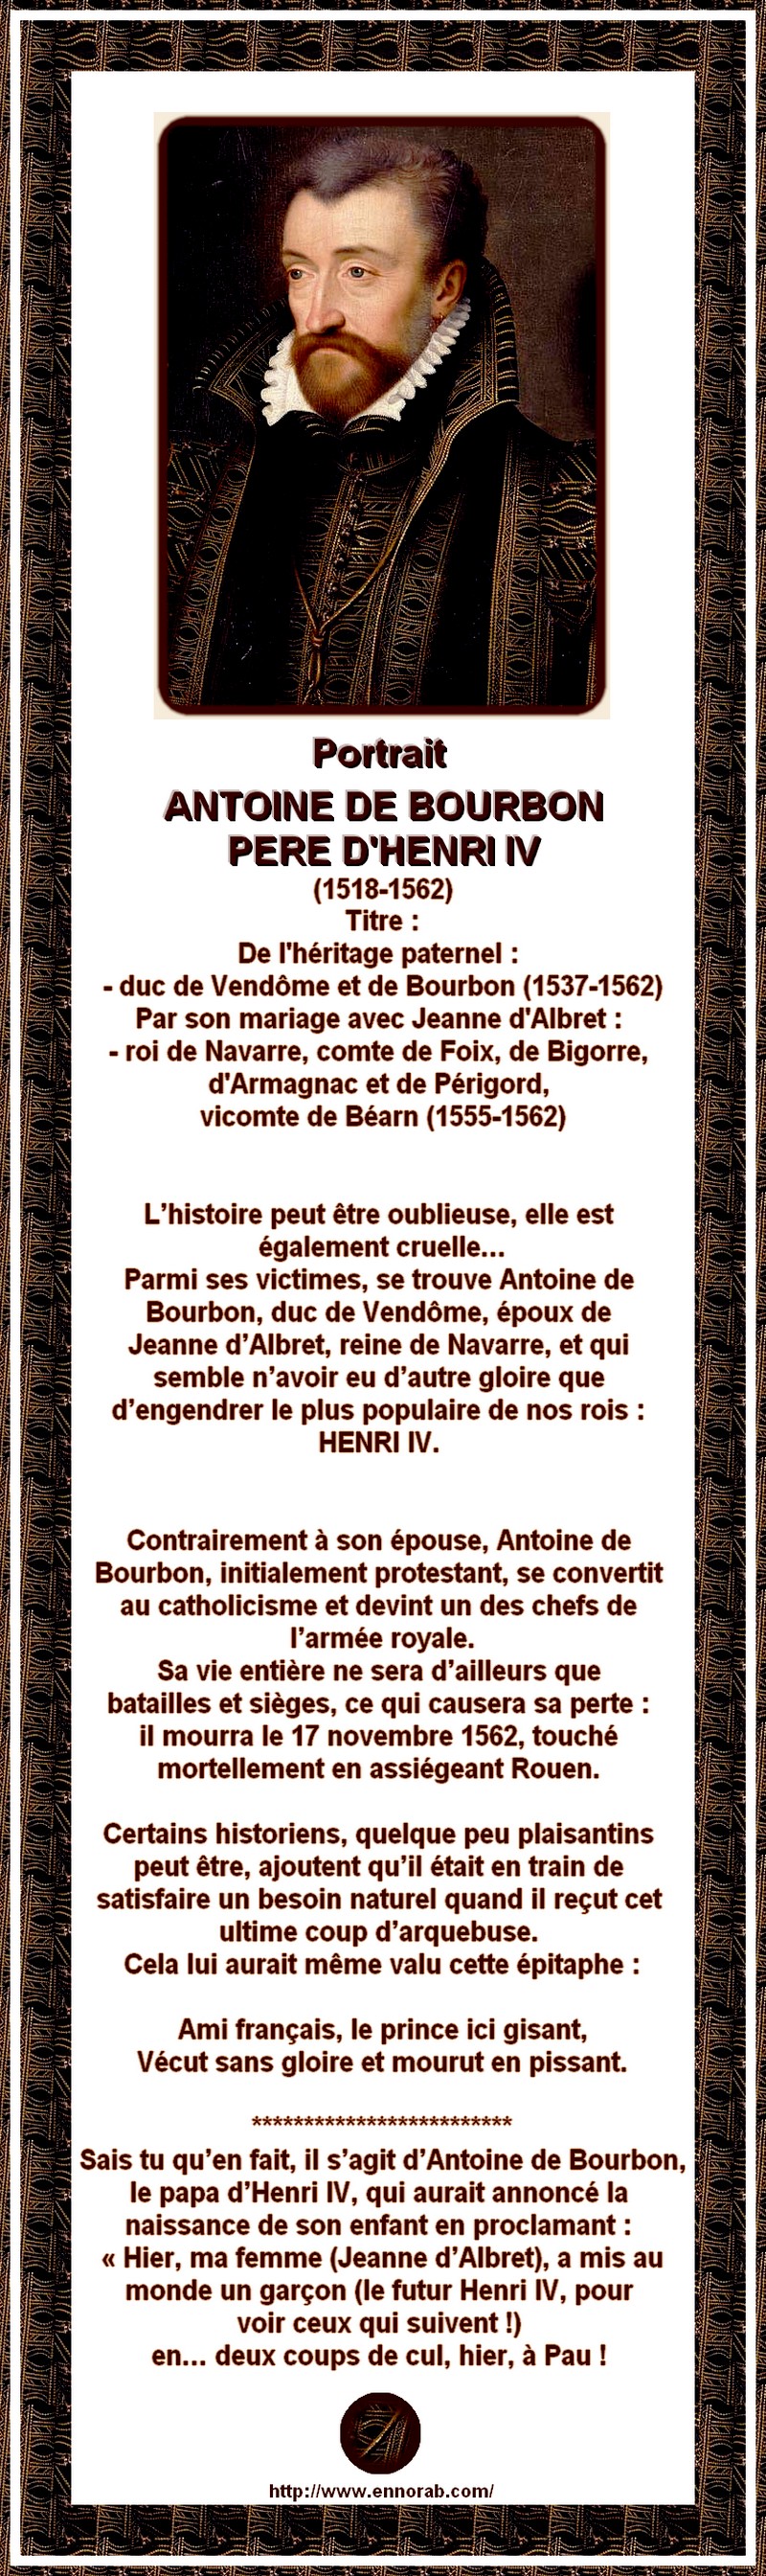 FRANCE - ANTOINE DE BOURBON PERE D'HENRI IV VECUT SANS GLOIRE ET MOURUT EN PISSANT 1202200451511431779463955